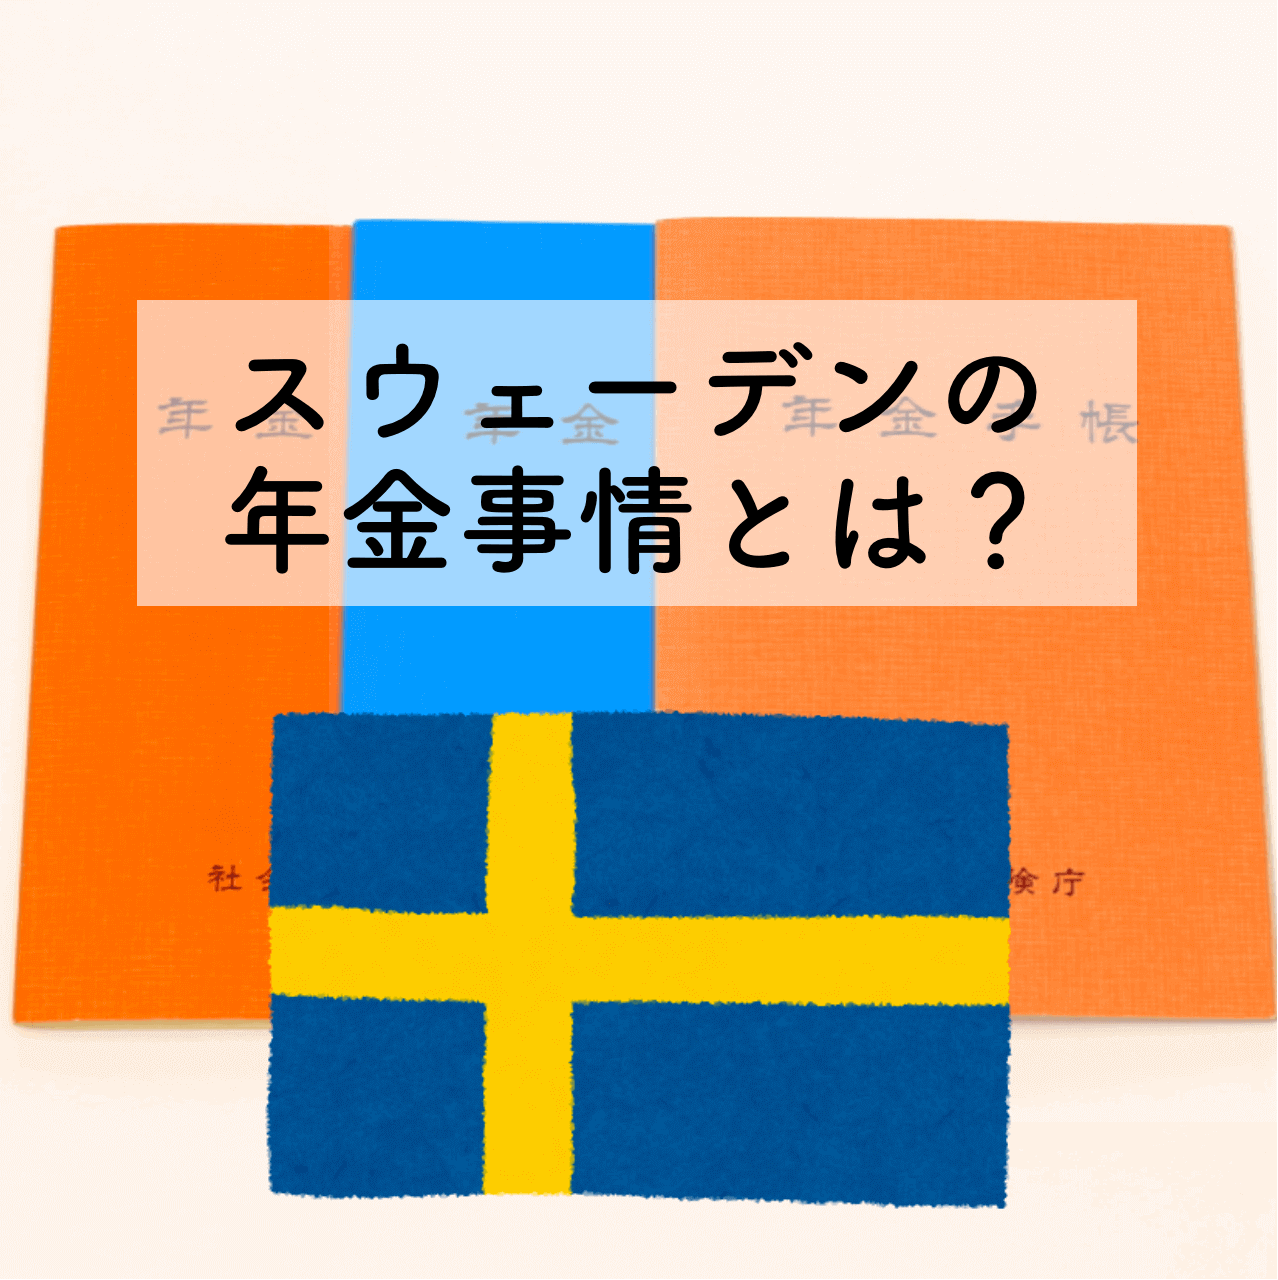 福祉大国スウェーデンの年金制度の仕組みや特徴を日本と比較して解説-サムネイル画像